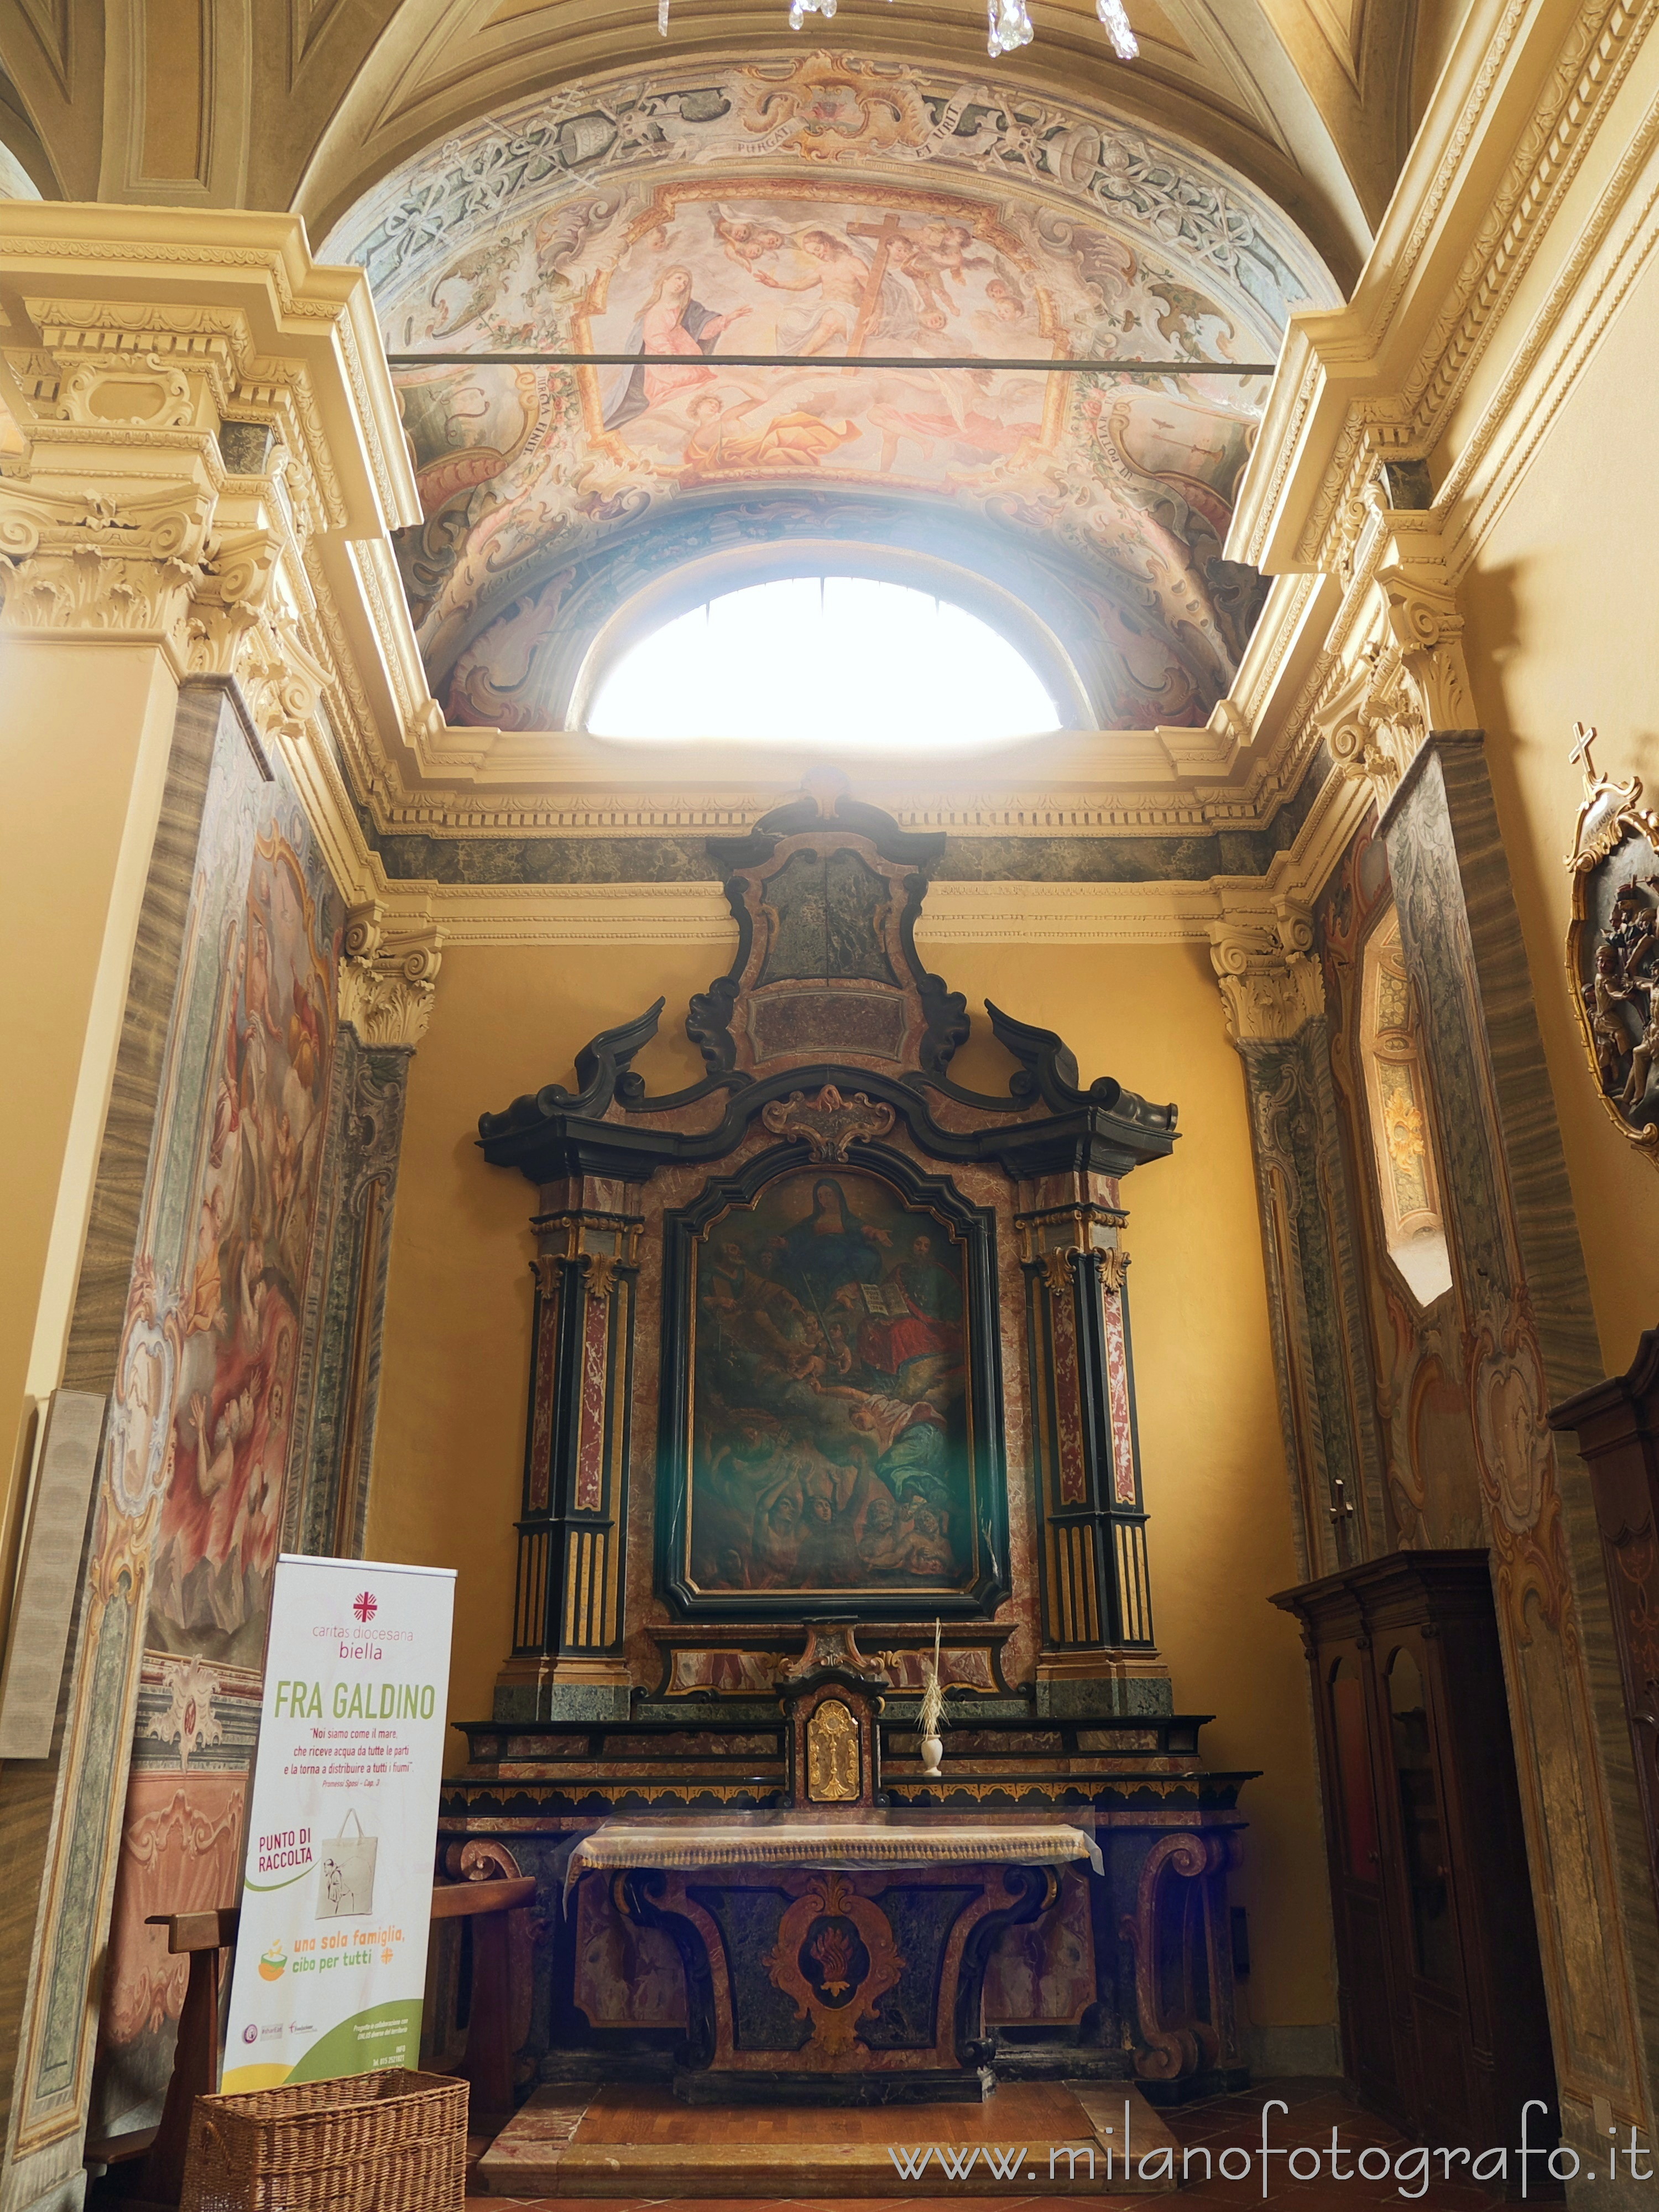 Trivero (Biella, Italy): Chapel of the Suffrage in the matrix church - Trivero (Biella, Italy)